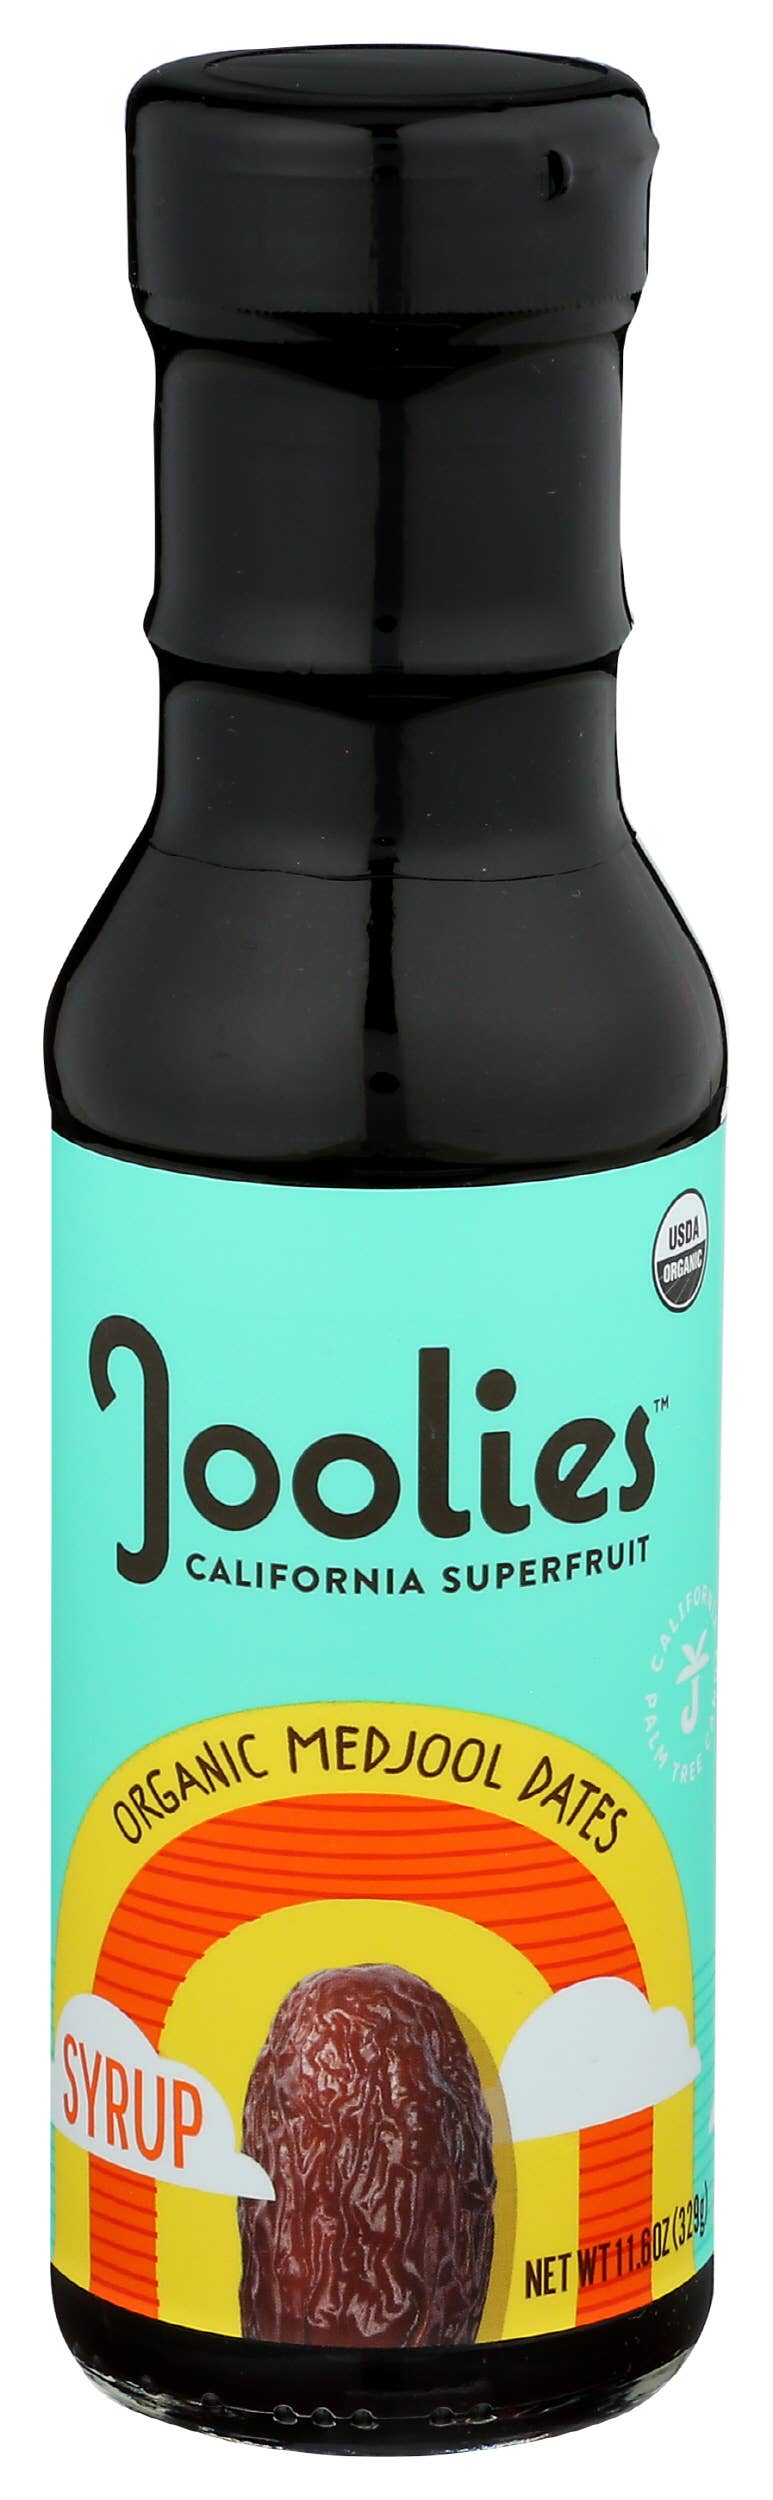 Joolies - Joolies Organic Medjool Date Syrup - Original